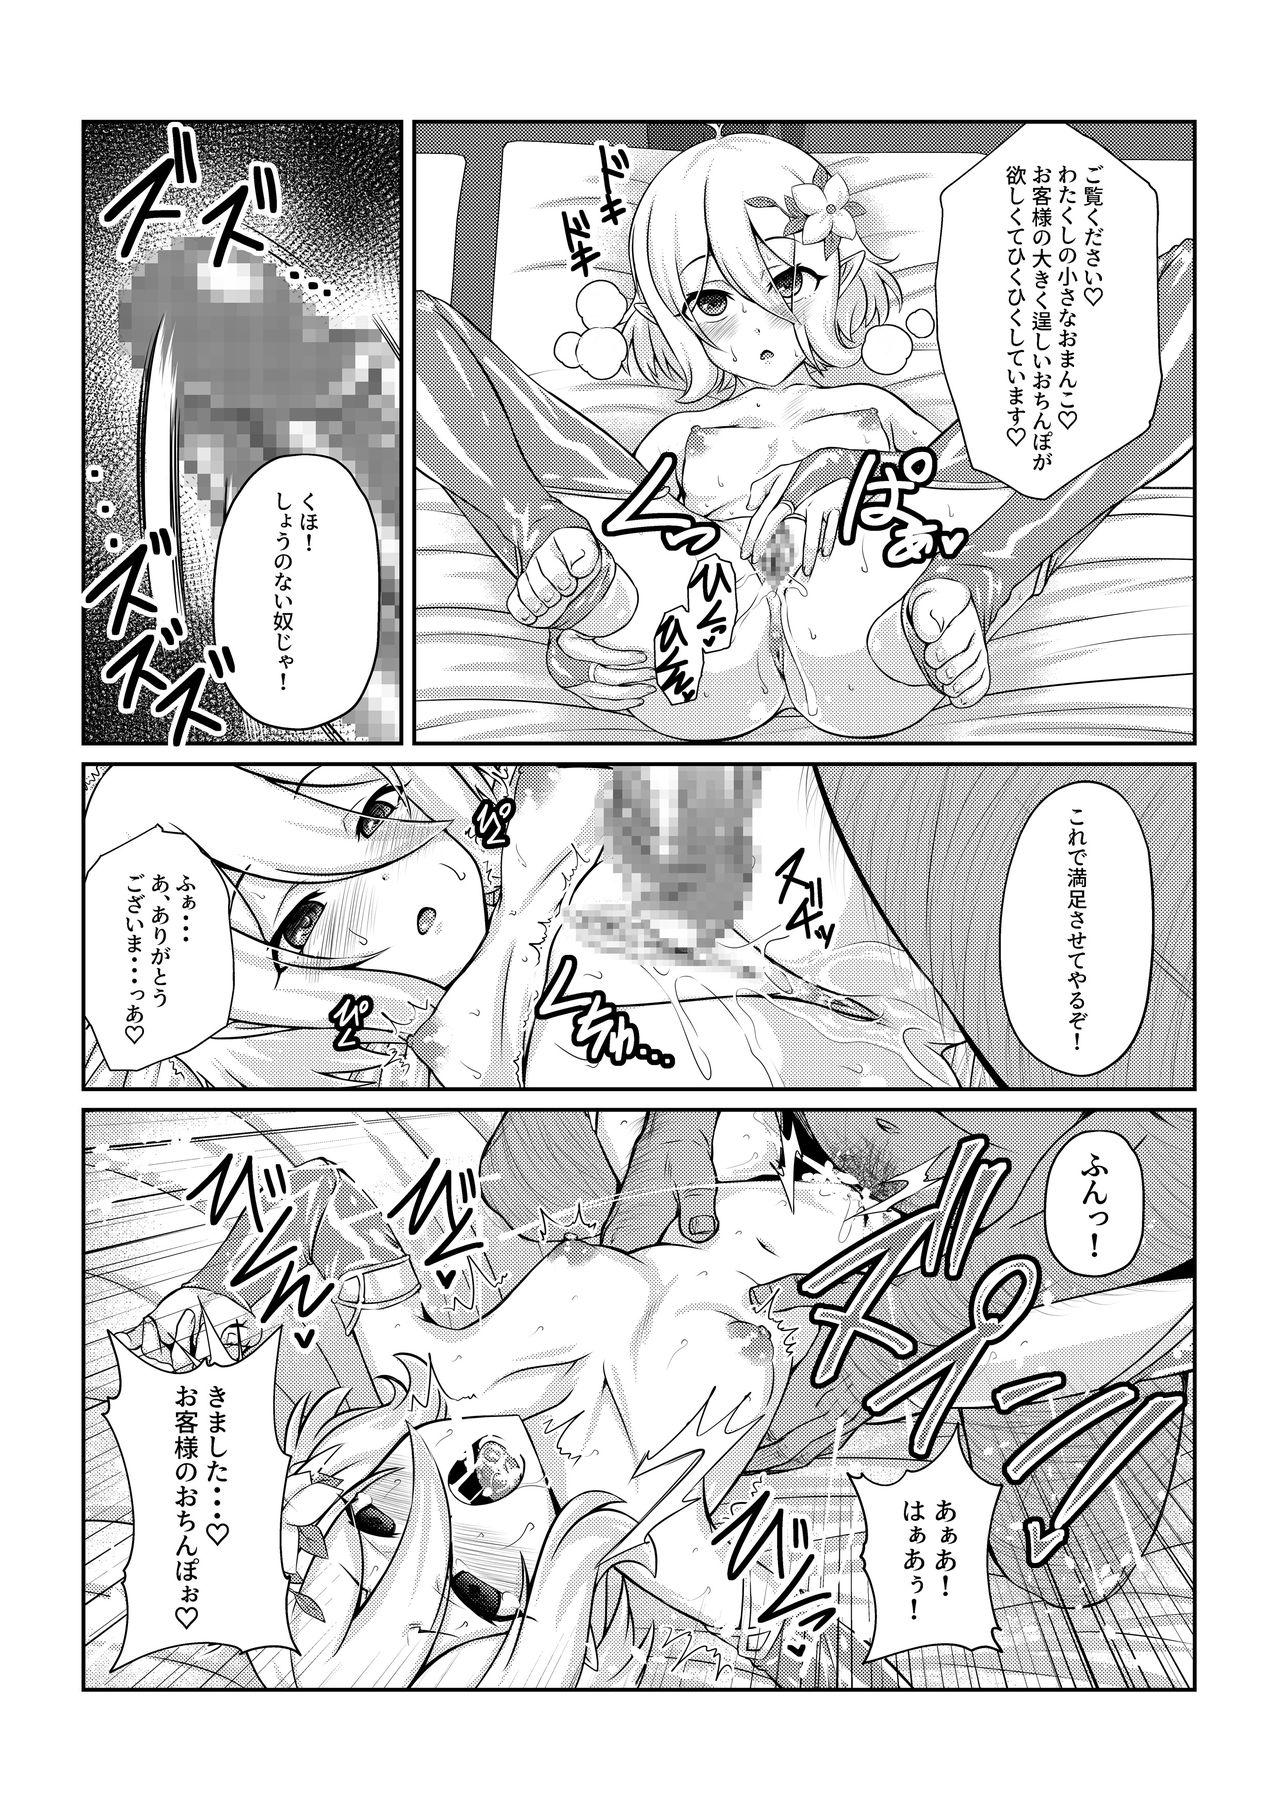 Behind [Fuwa Fuwa Pinkchan] -Kokoro- (Princess Connect Re:Dive) - Princess connect Step Fantasy - Page 9